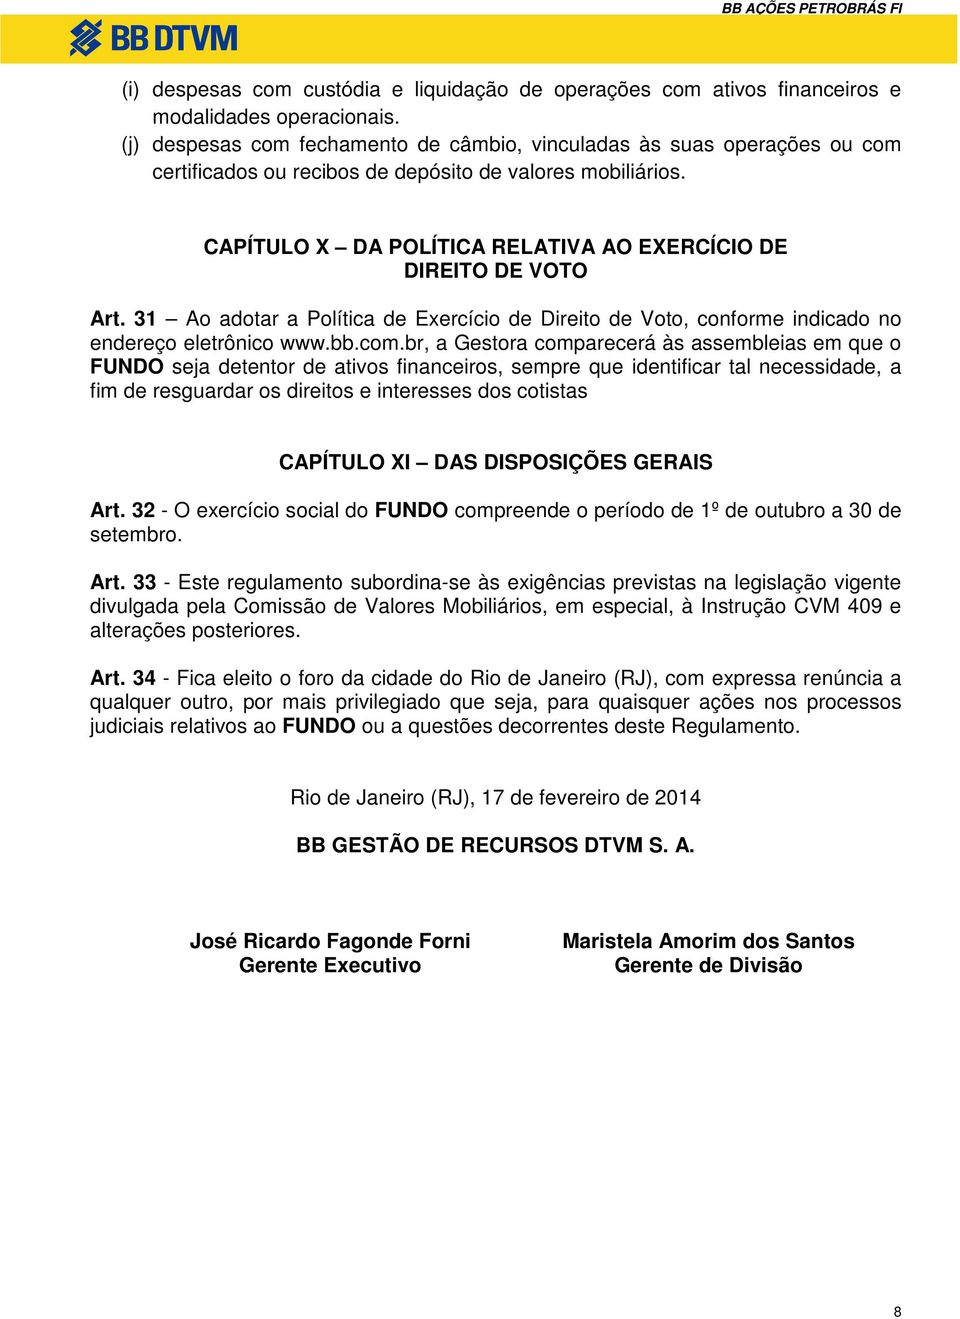 CAPÍTULO X DA POLÍTICA RELATIVA AO EXERCÍCIO DE DIREITO DE VOTO Art. 31 Ao adotar a Política de Exercício de Direito de Voto, conforme indicado no endereço eletrônico www.bb.com.